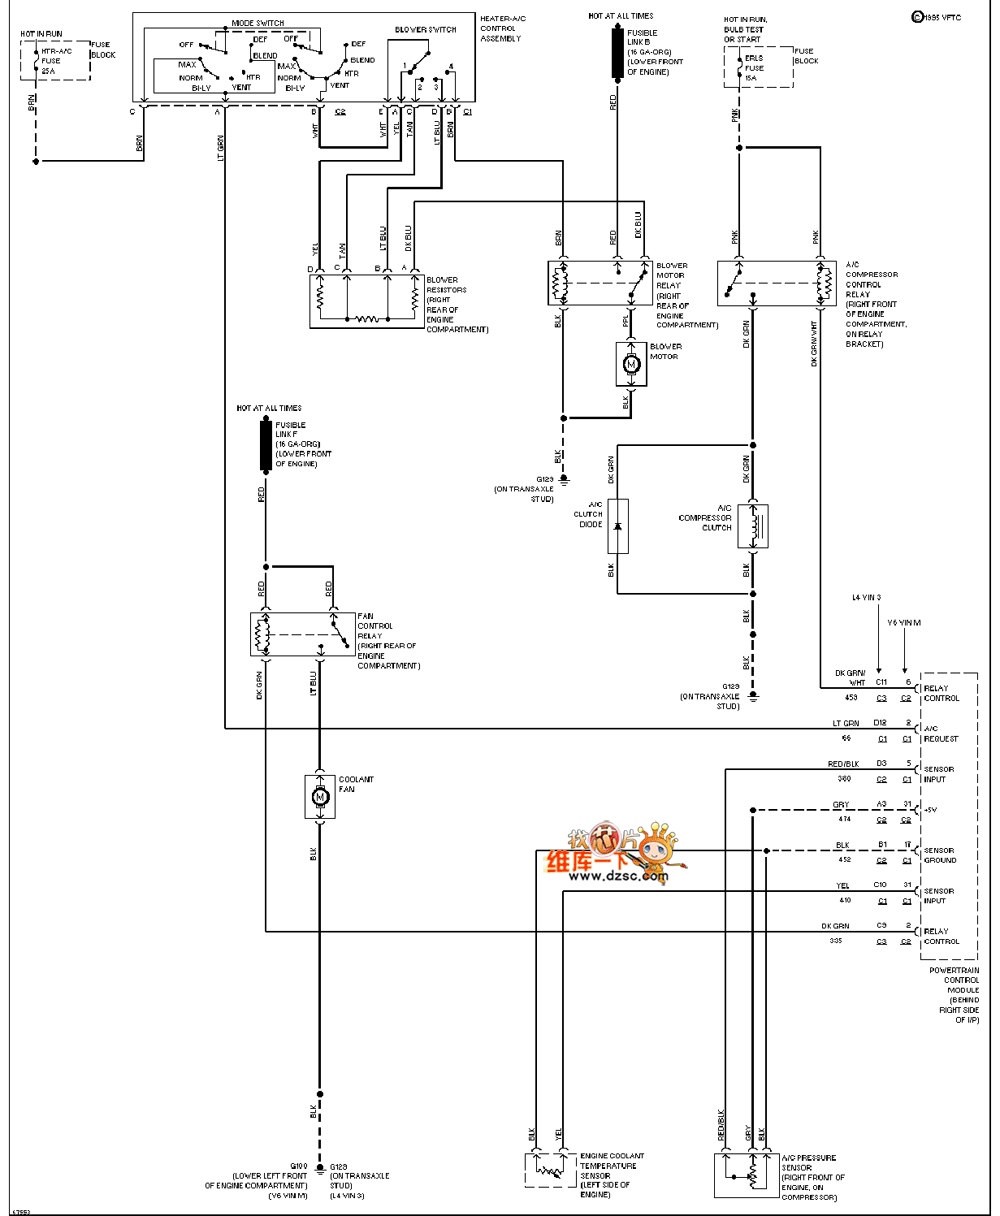 General 95 Ozmobi ACHIEVA air conditioning system circuit diagram